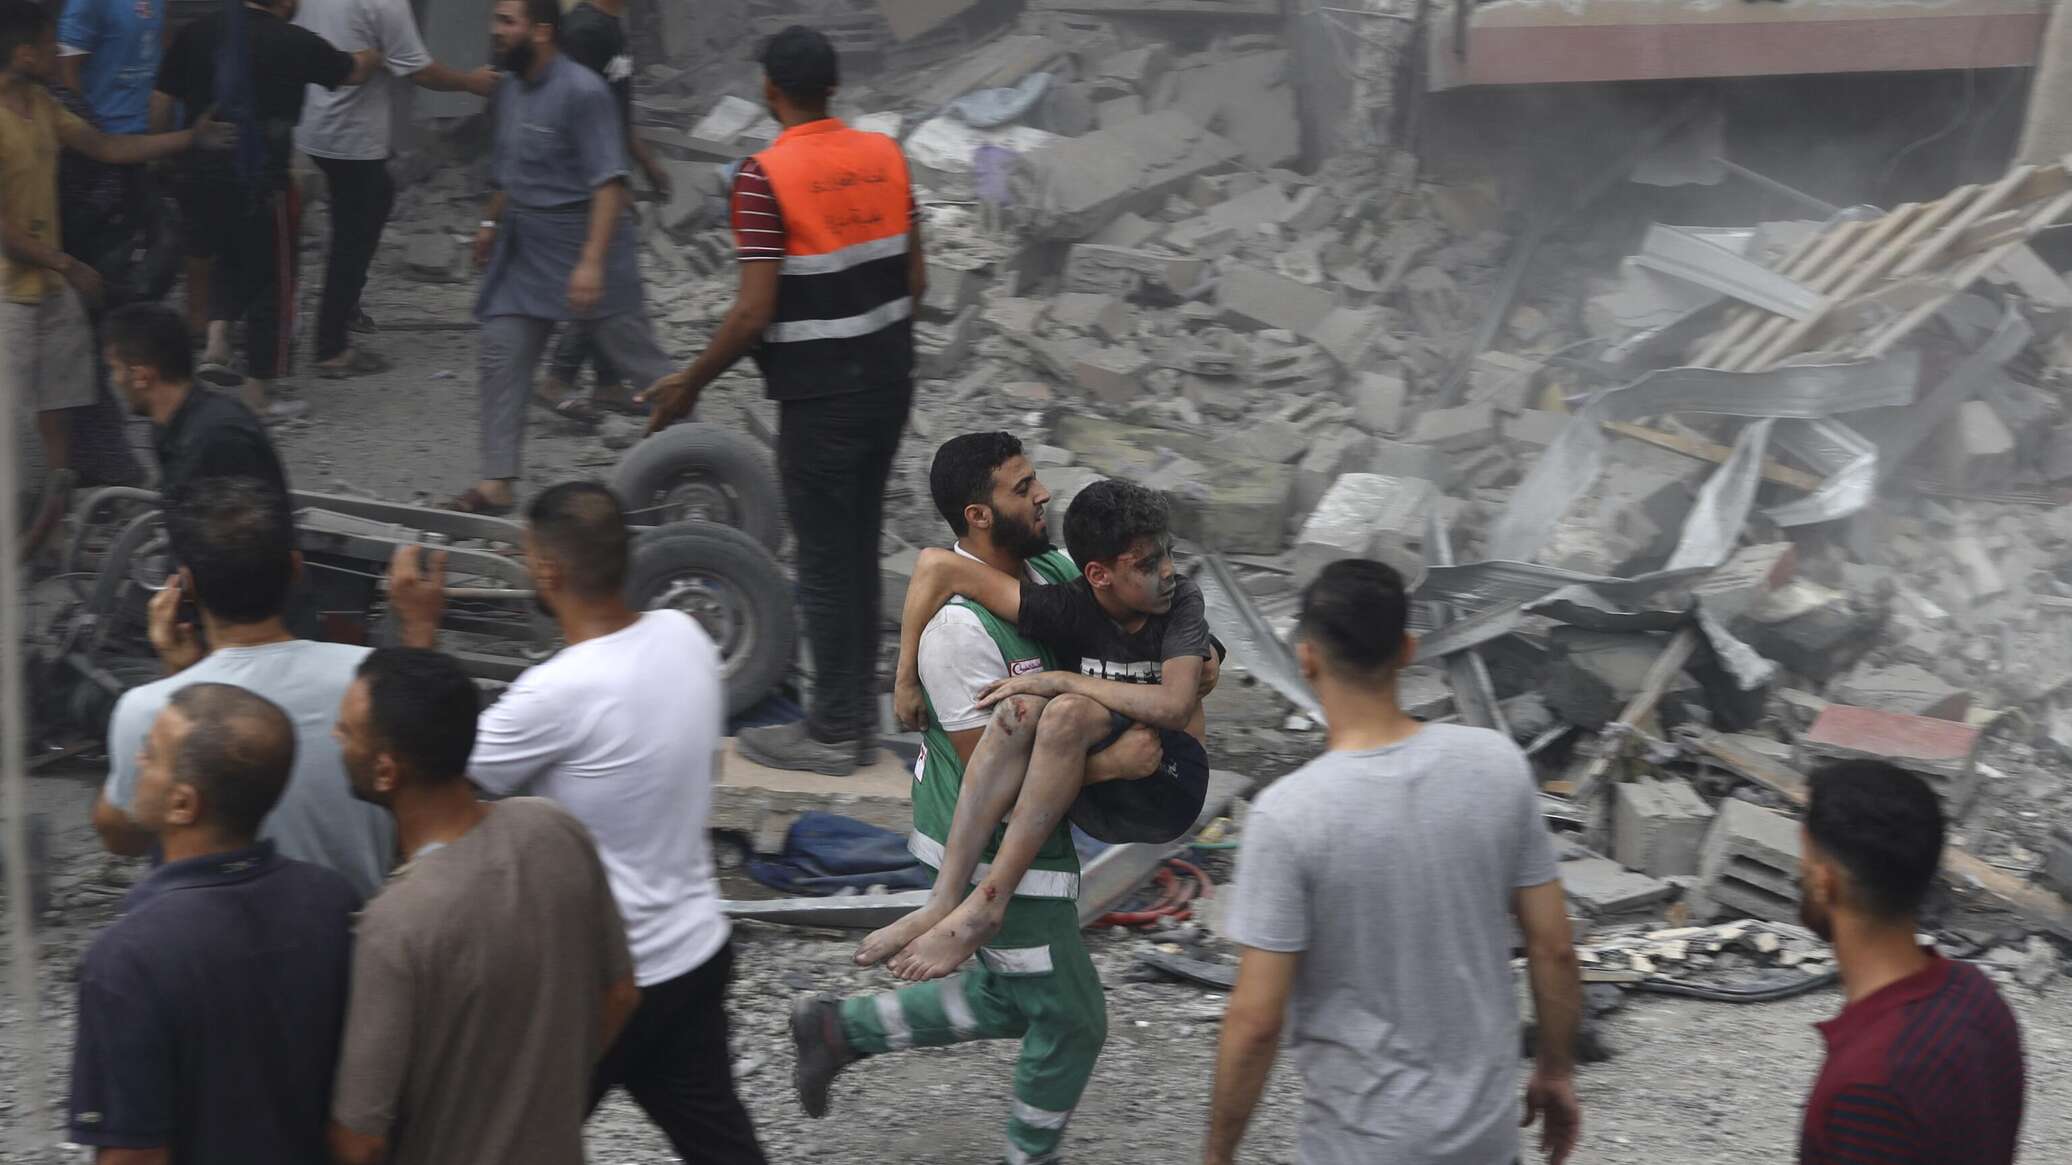 قيادي في "حماس": قطع الاتصالات عن غزة "حرب نفسية" والطيران أنقذ القوات الإسرائيلية